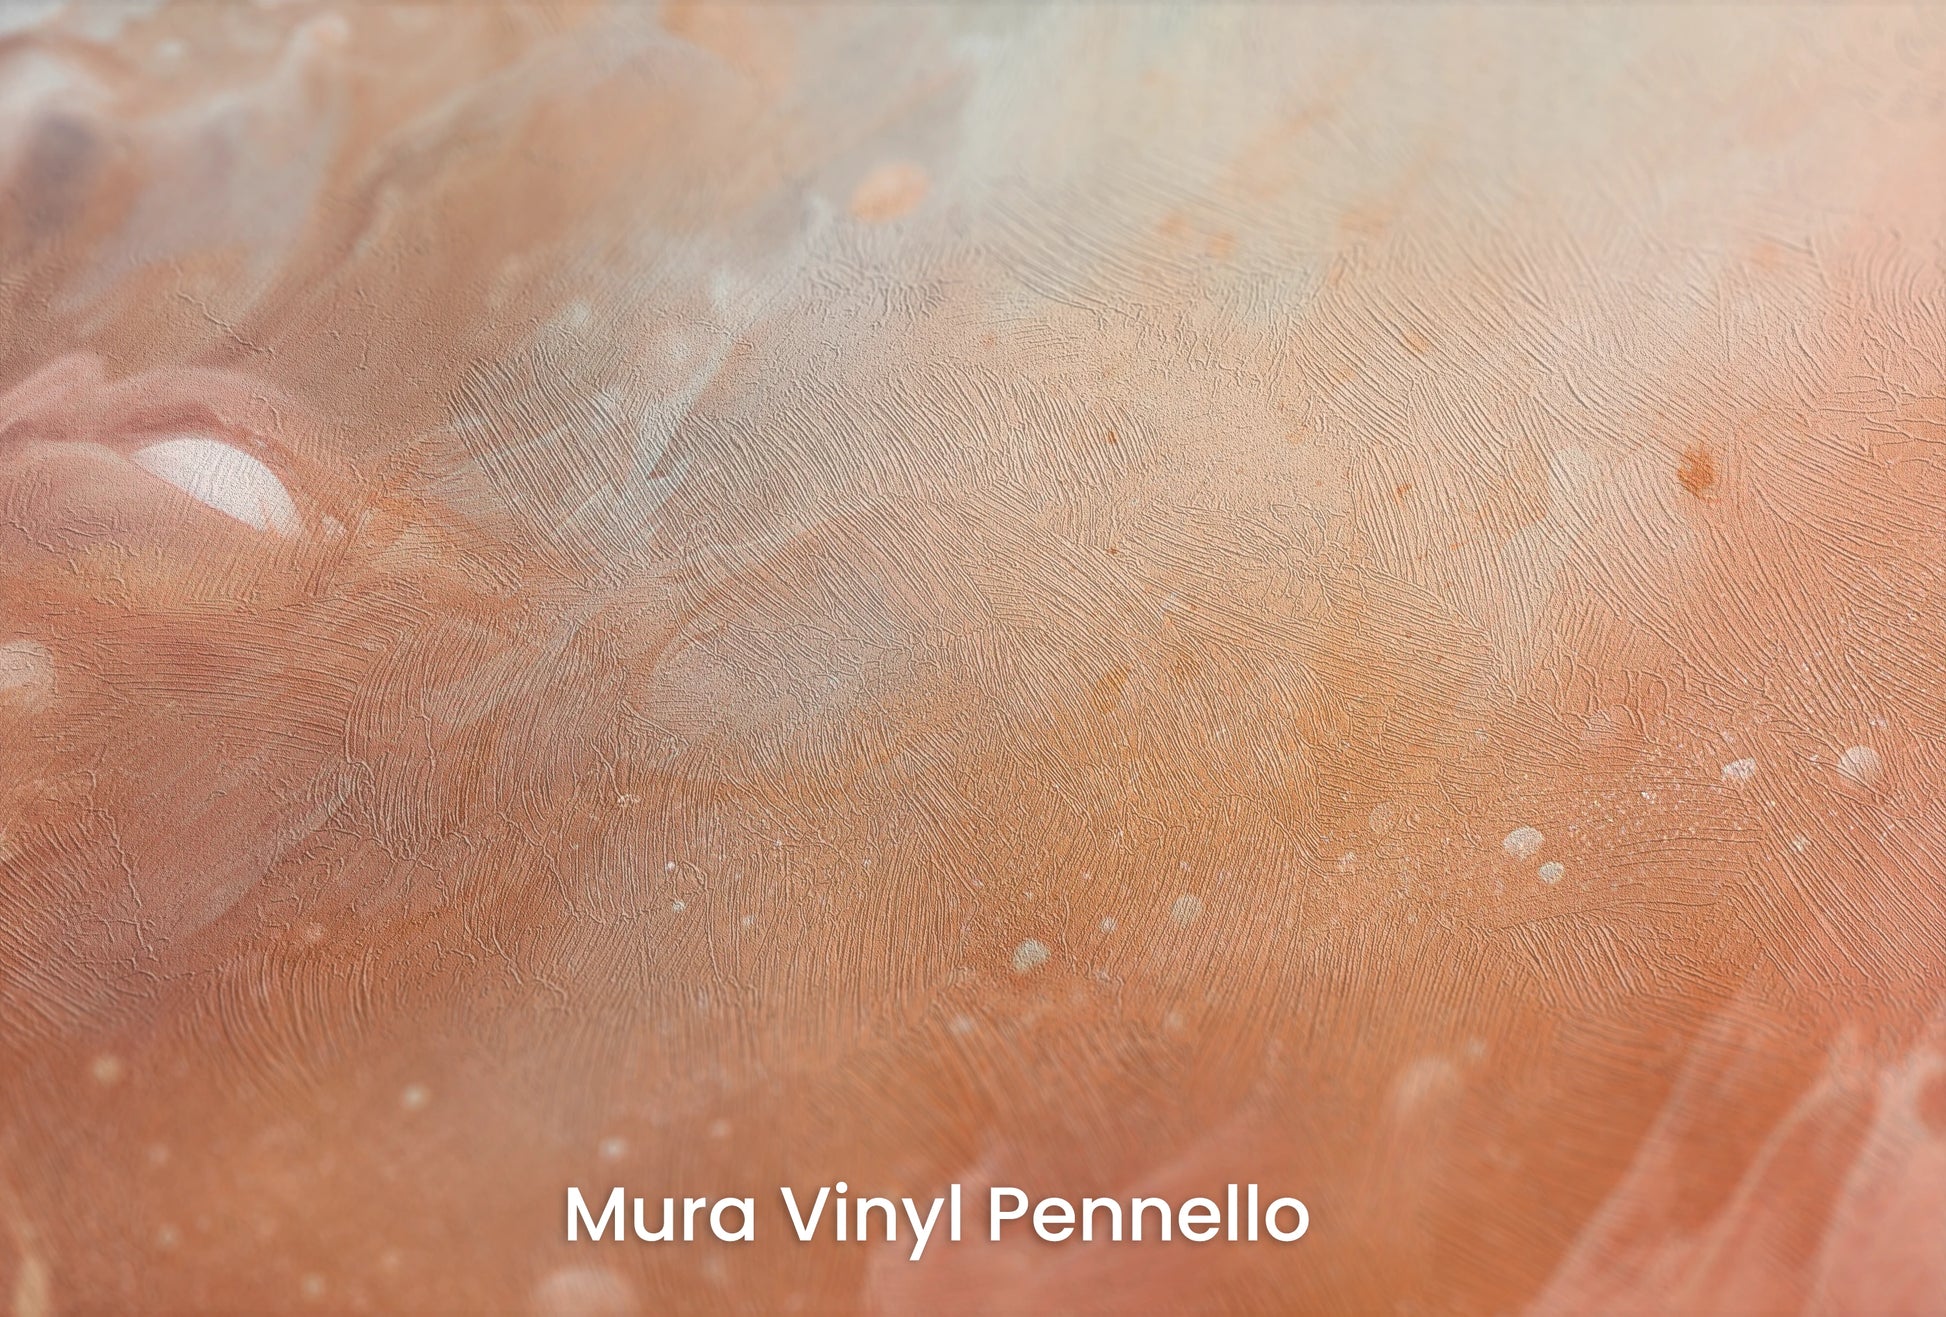 Zbliżenie na artystyczną fototapetę o nazwie Solar Nebula na podłożu Mura Vinyl Pennello - faktura pociągnięć pędzla malarskiego.